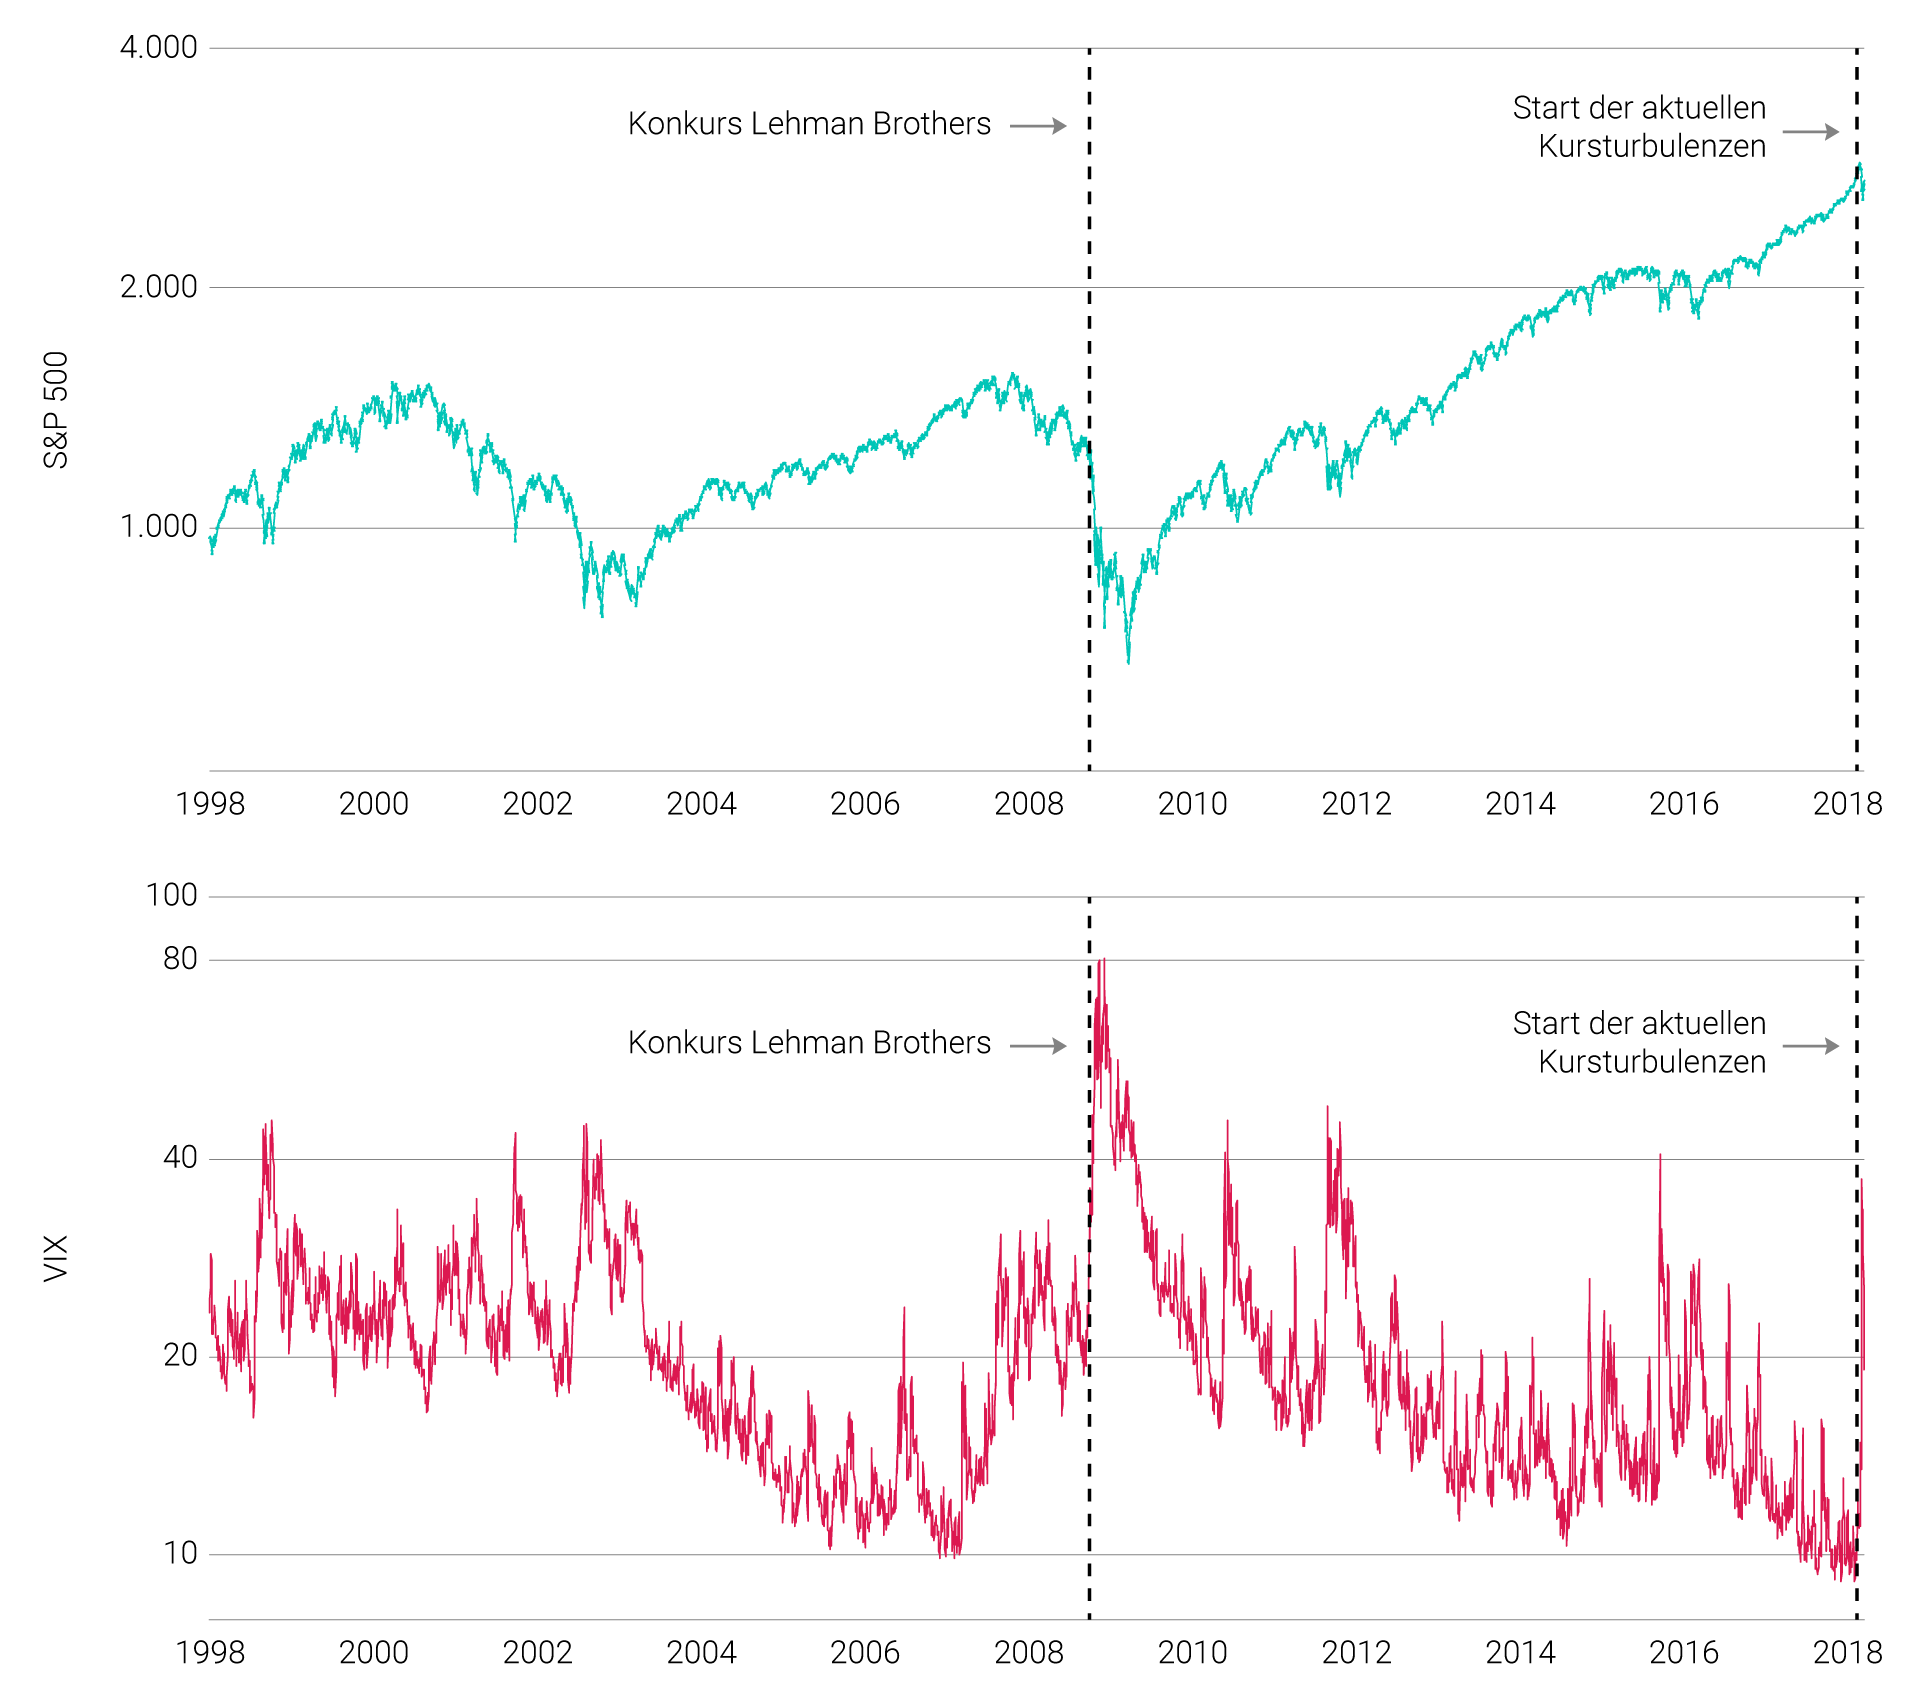 Bewegte Jahre - S&P 500 und sein Volatilitätsindex VIX (in Punkten)*